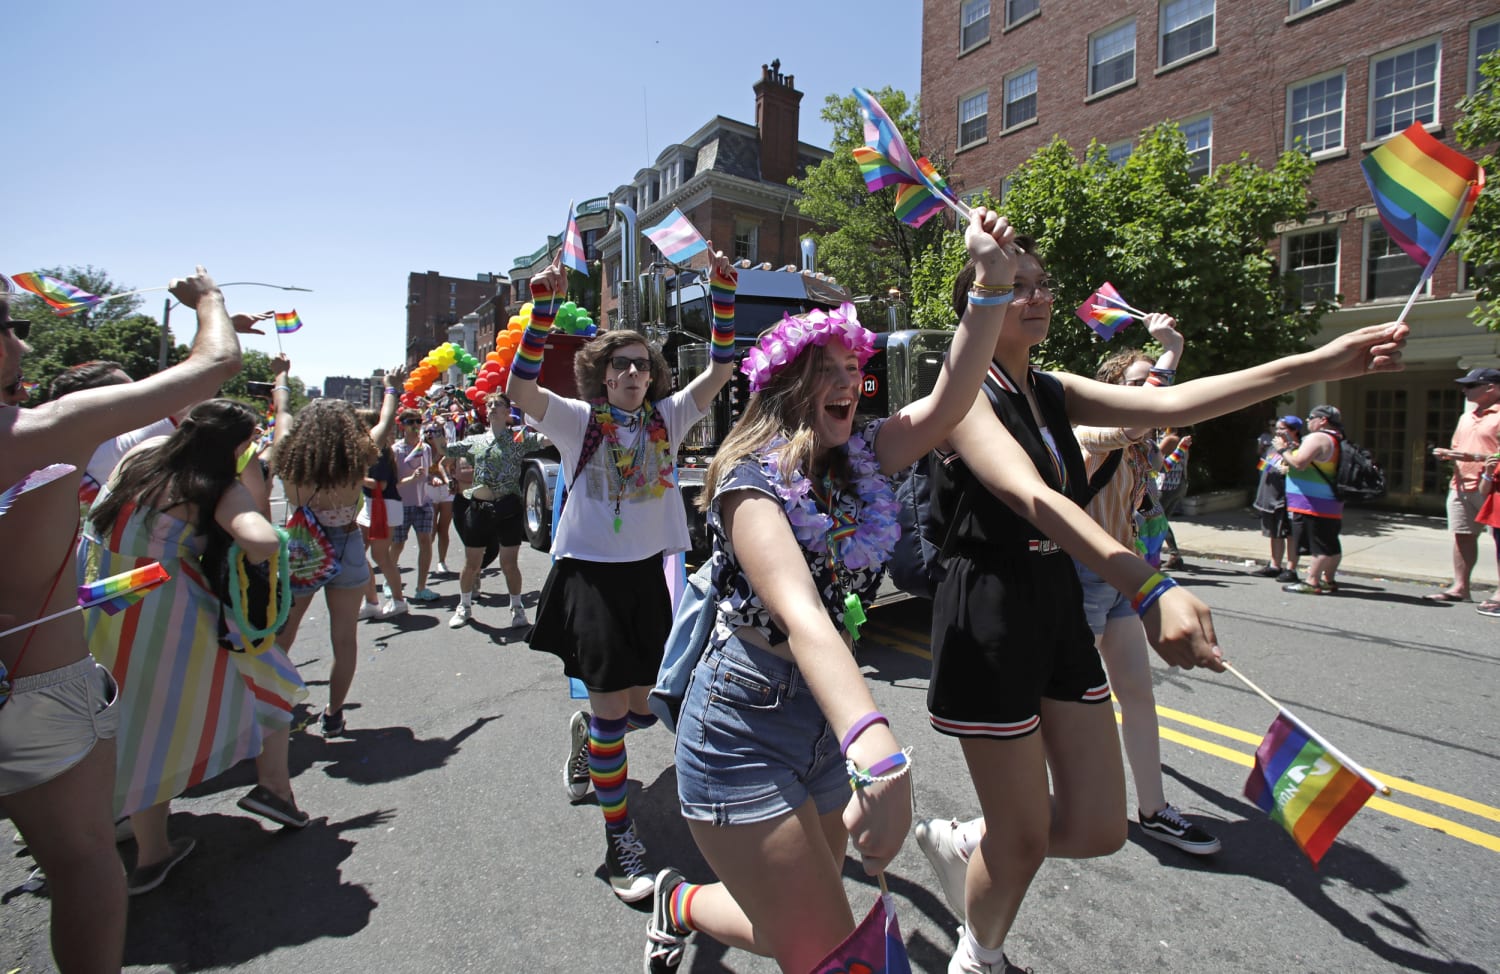 The Boston Pride